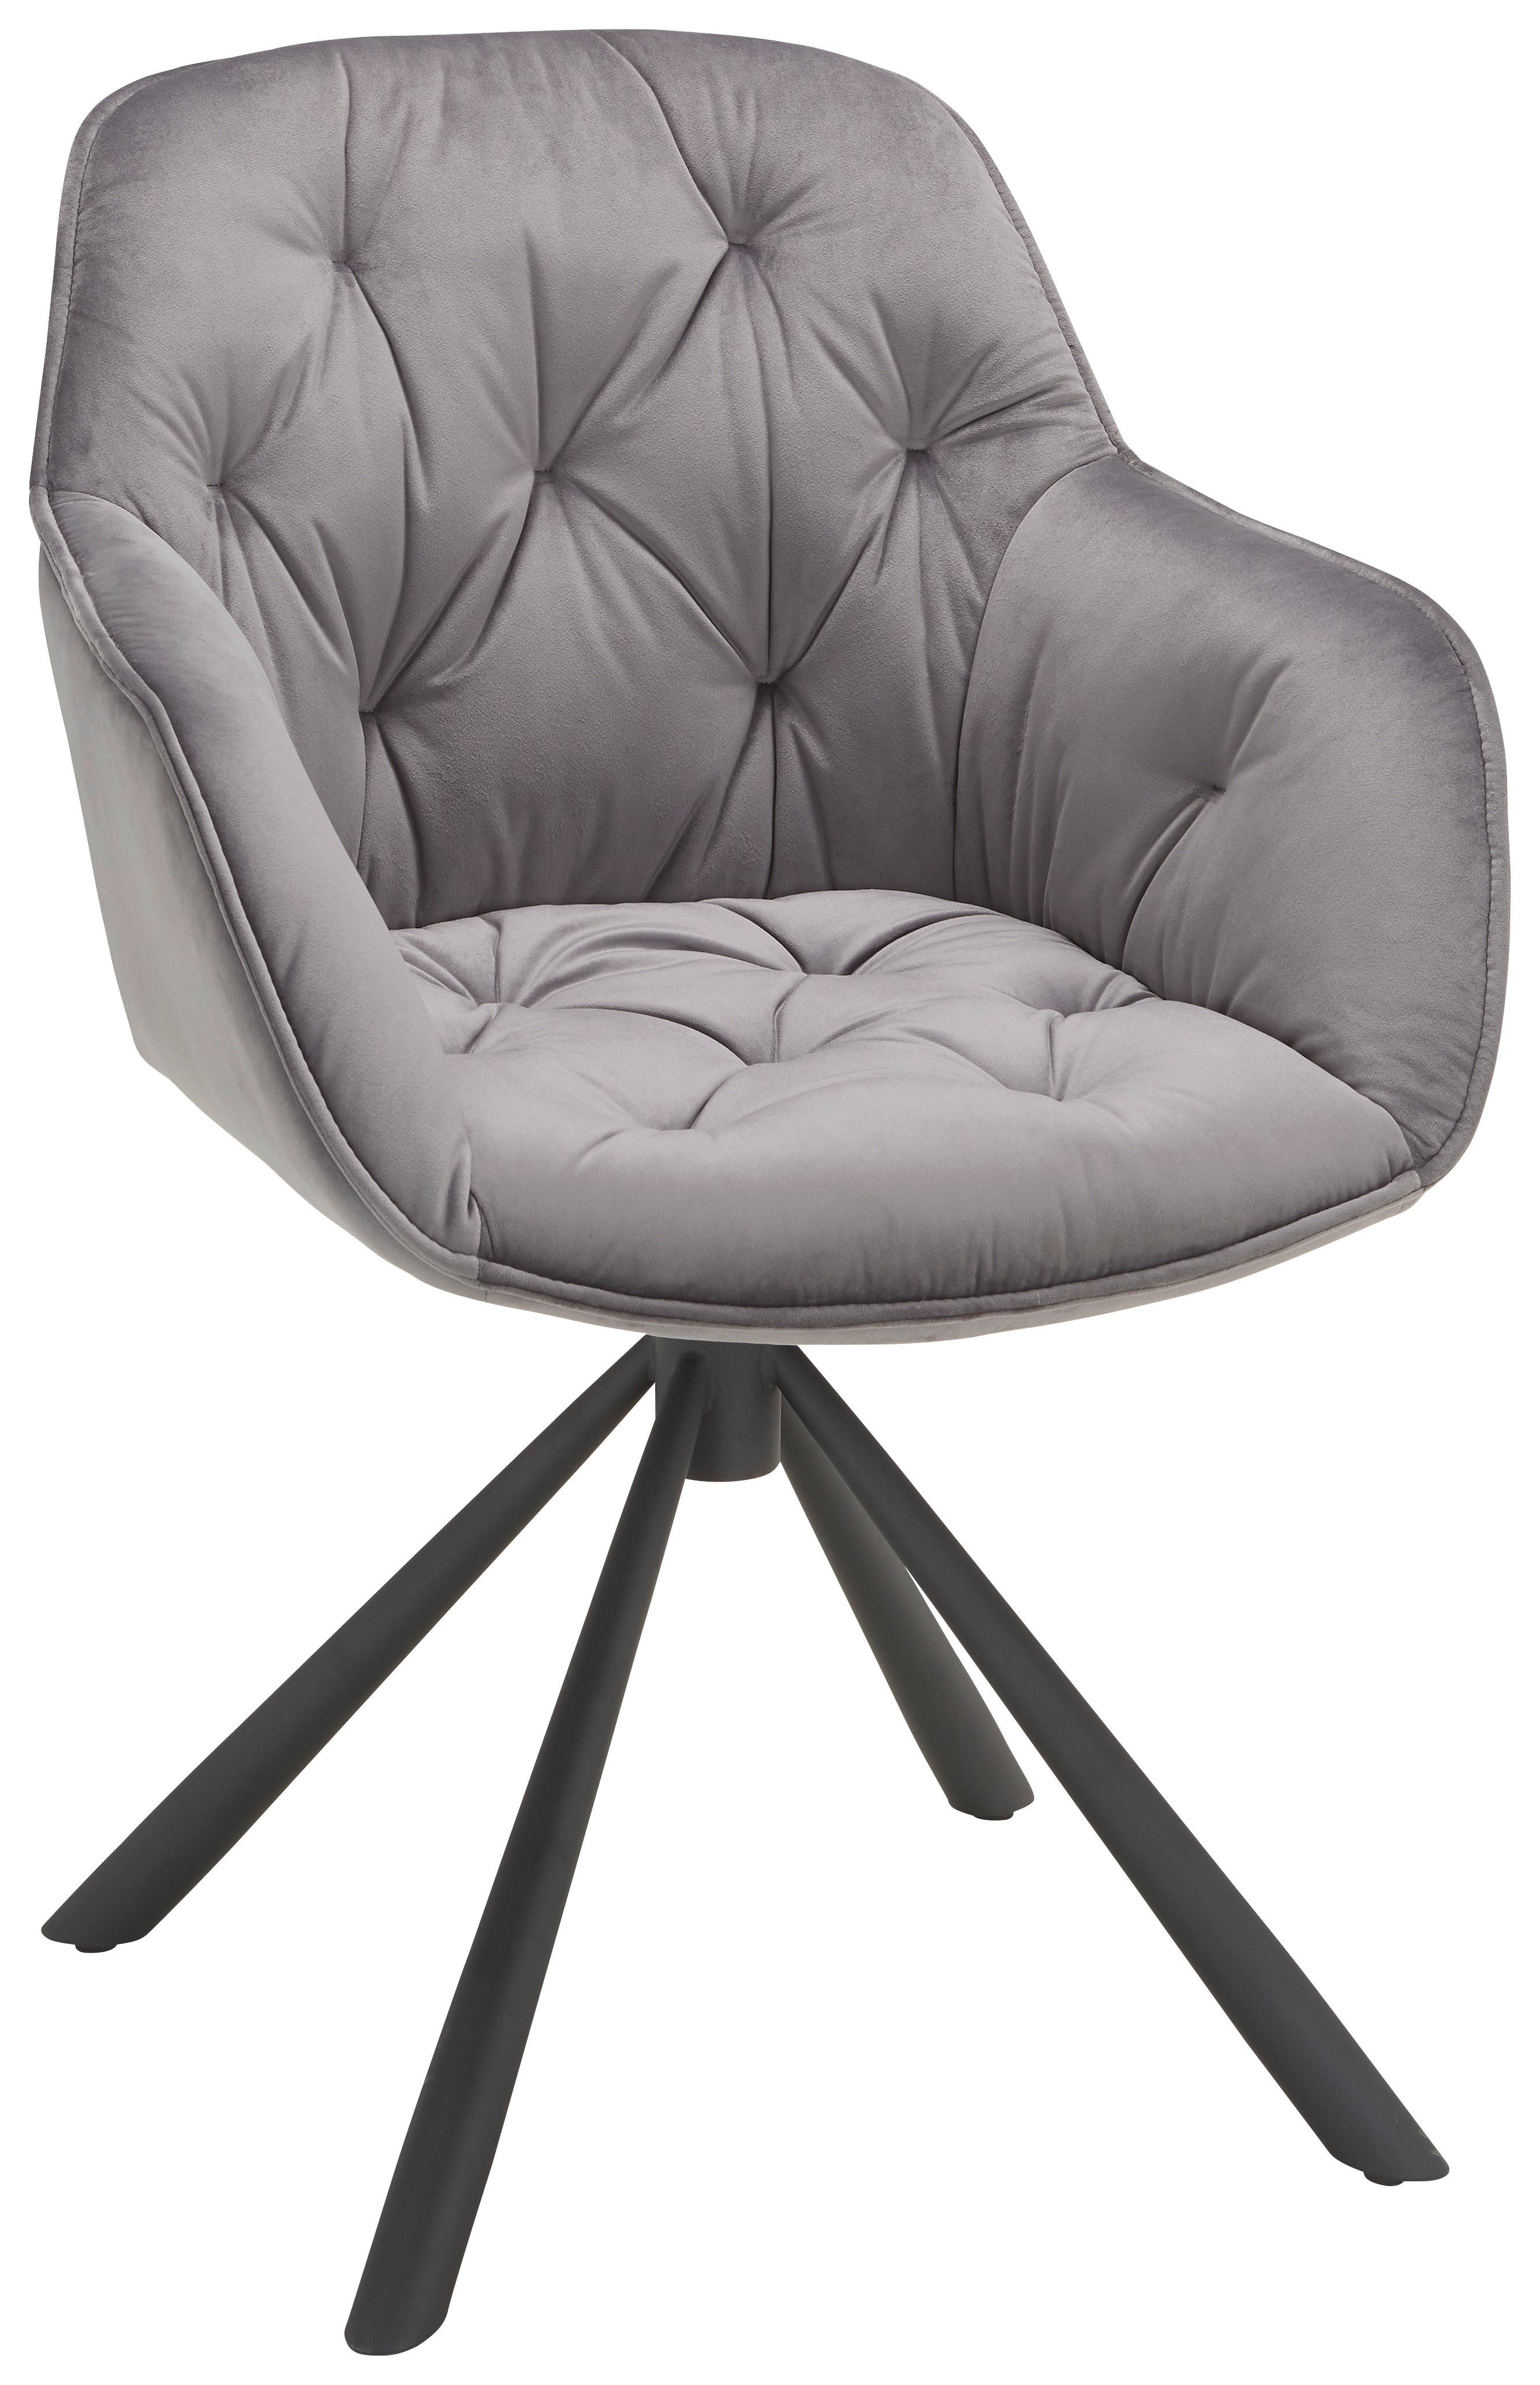 Židle Eileen Šedá - šedá/černá, Lifestyle, kov/dřevo (68/86/64cm) - Premium Living